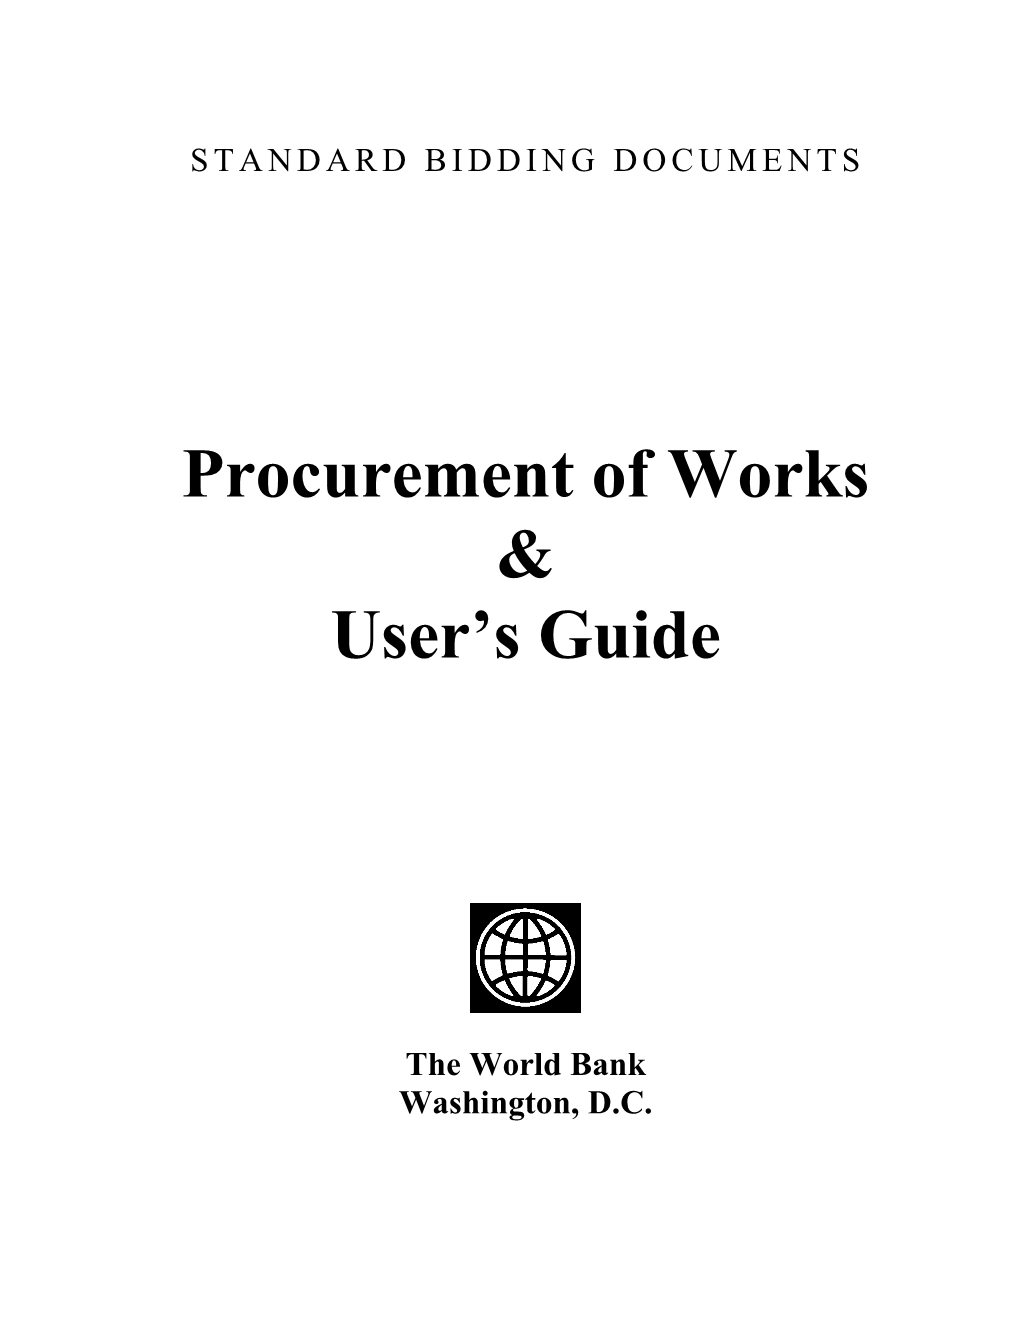 Procurement of Works